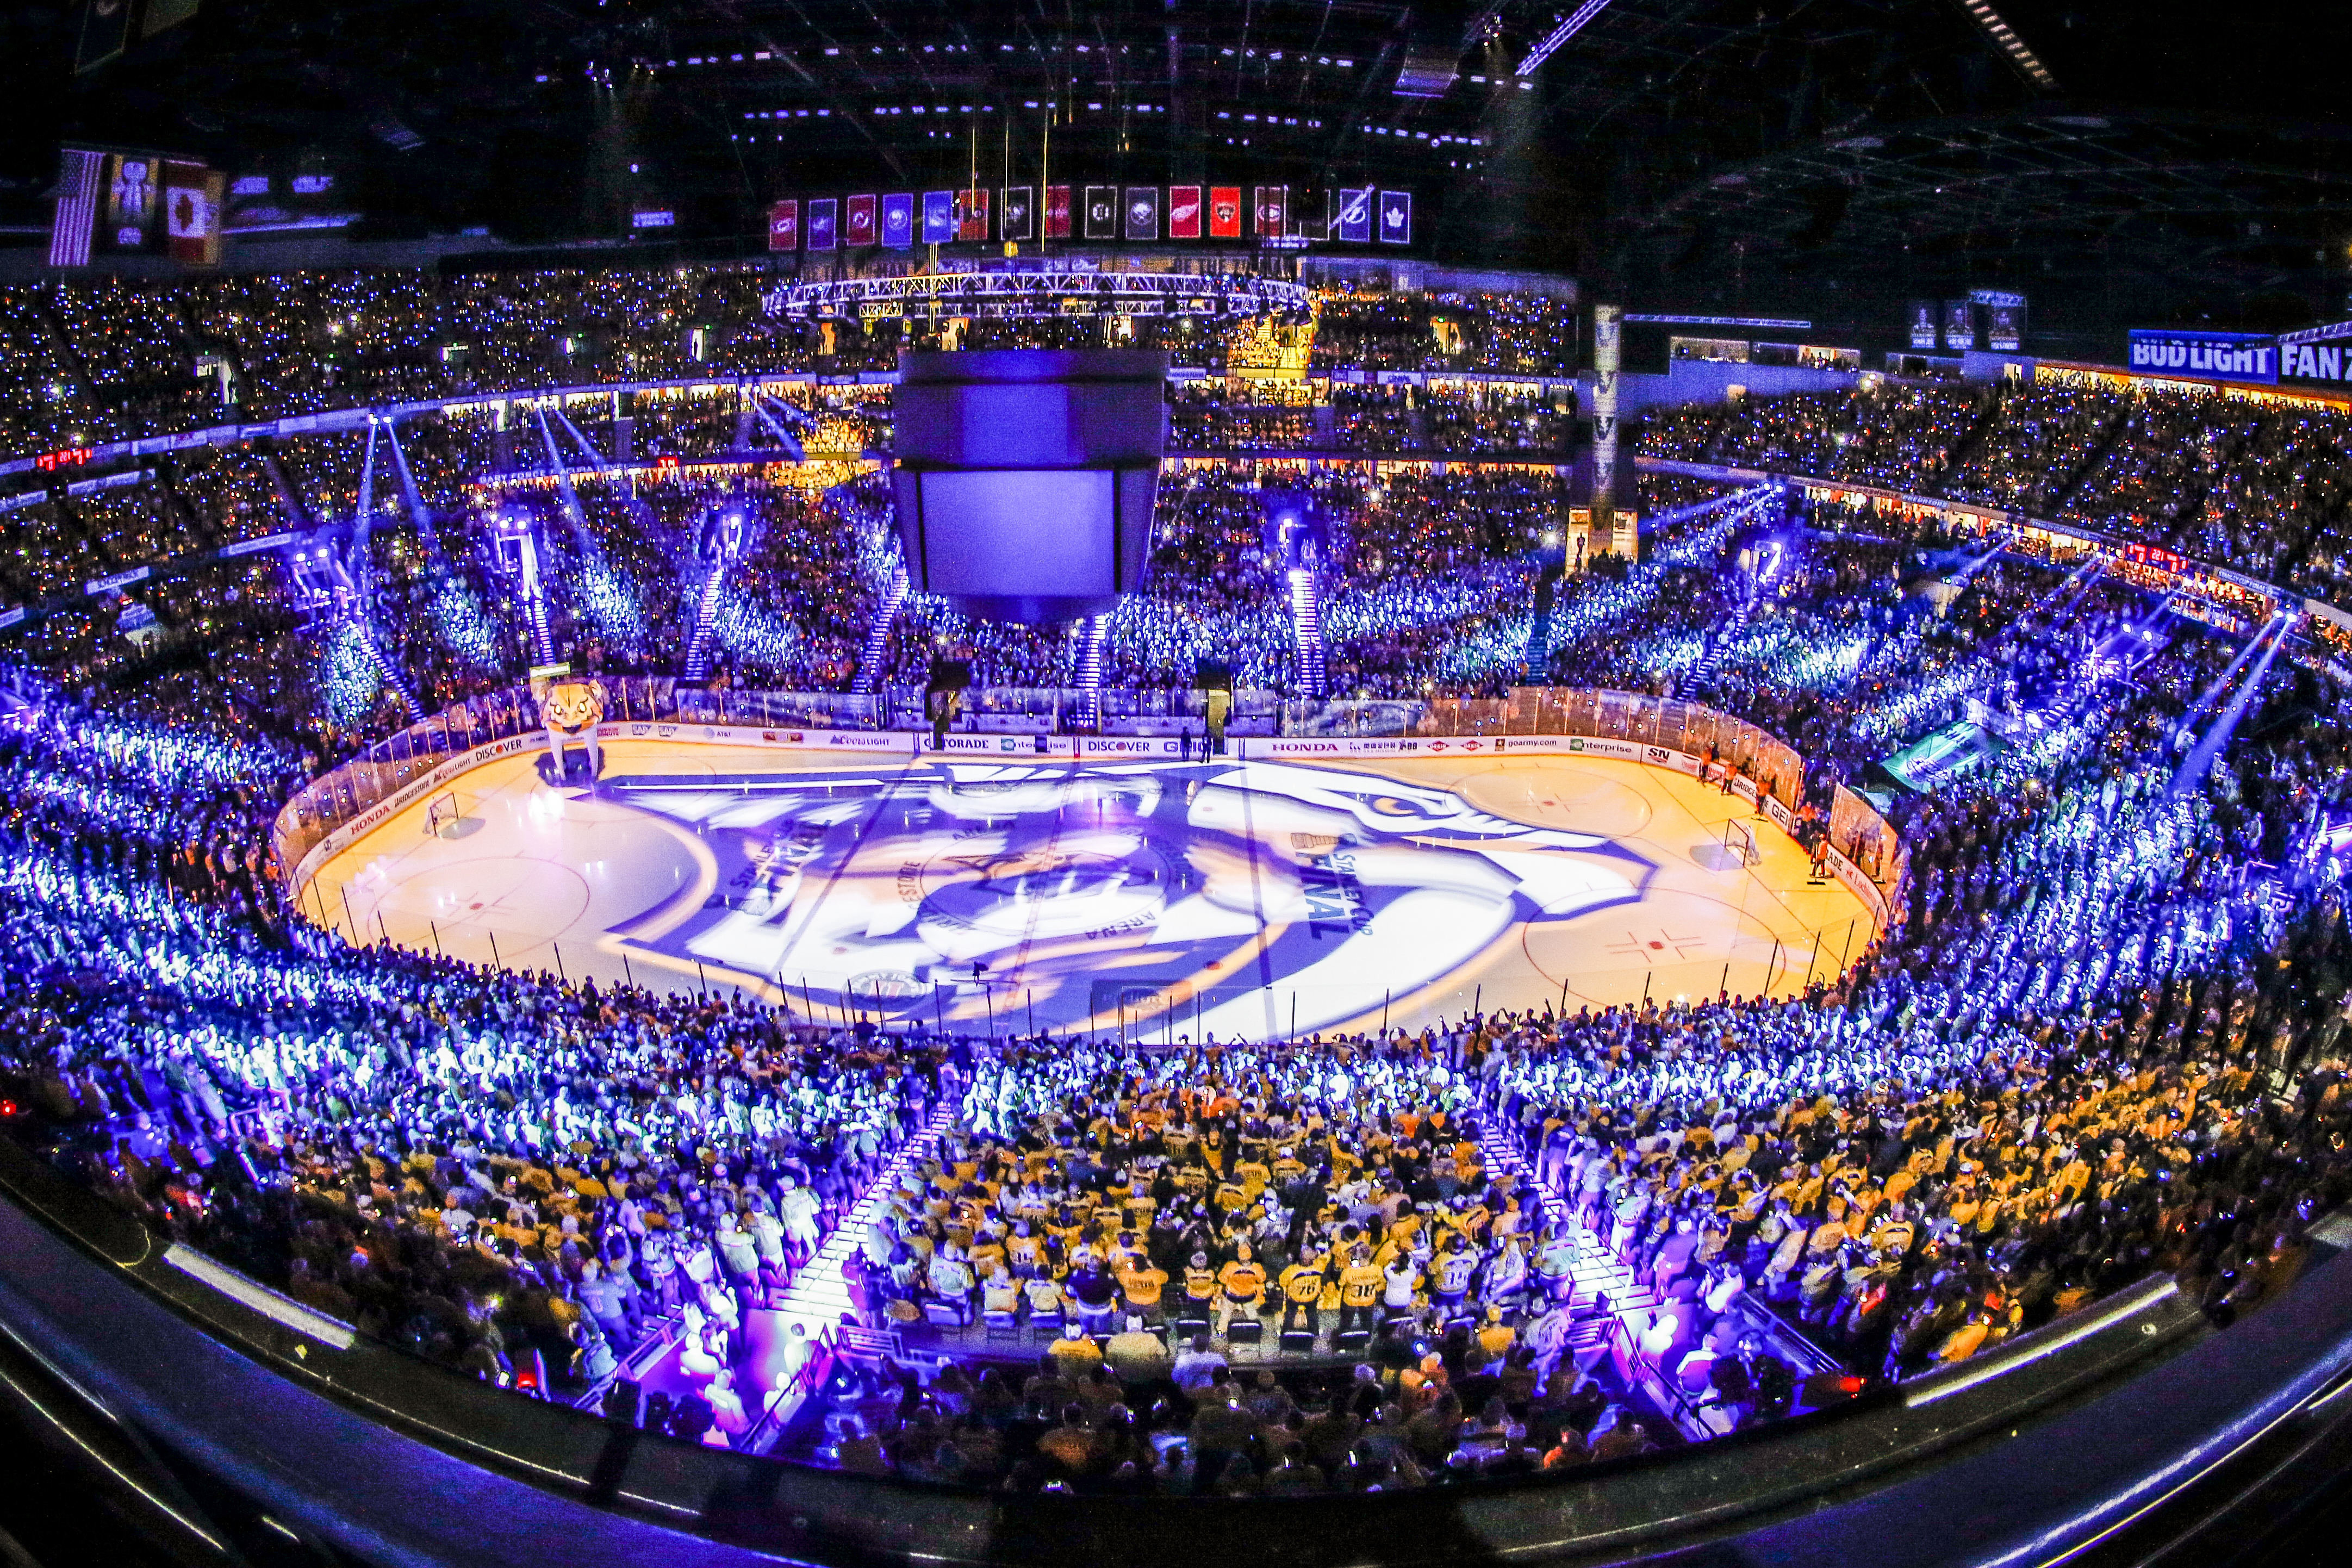 Bridgestone Arena - Home of the NHL's Nashville Predators